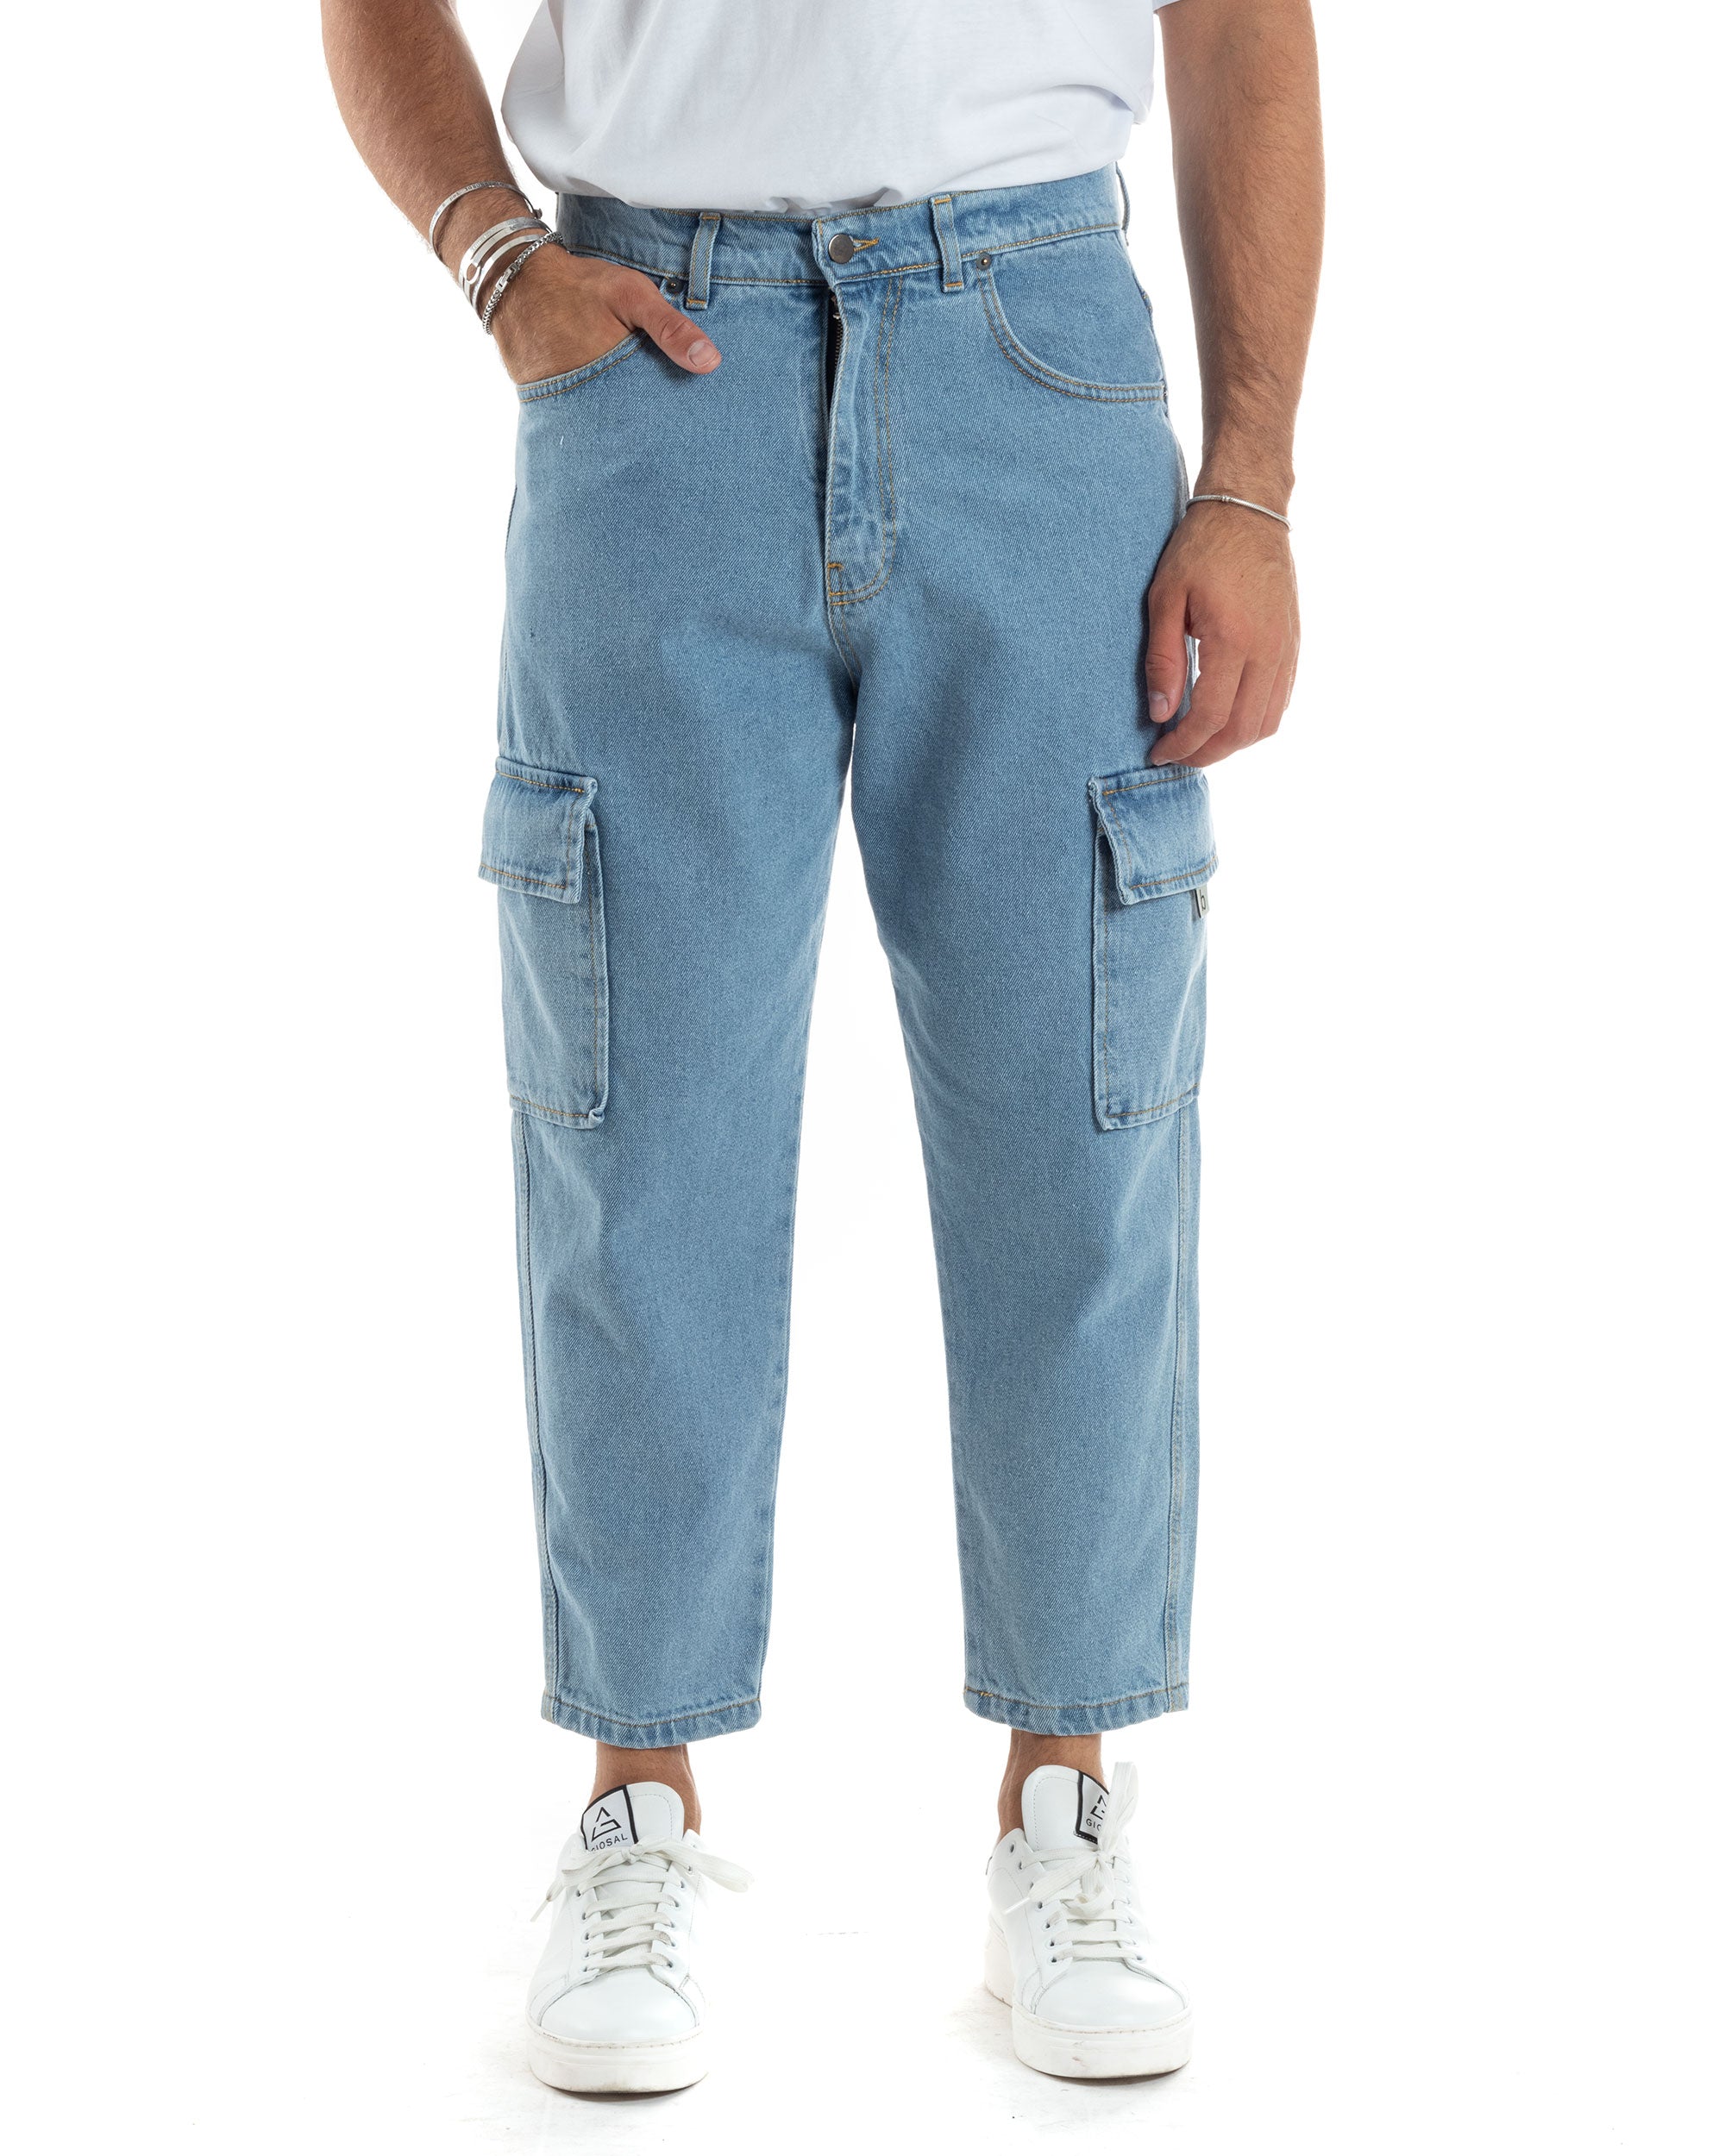 Pantaloni Jeans Uomo Cargo Straight Fit Alla Caviglia Casual Basic Cinque Tasche Con Tasche Tasconi Denim GIOSAL-JS1041A